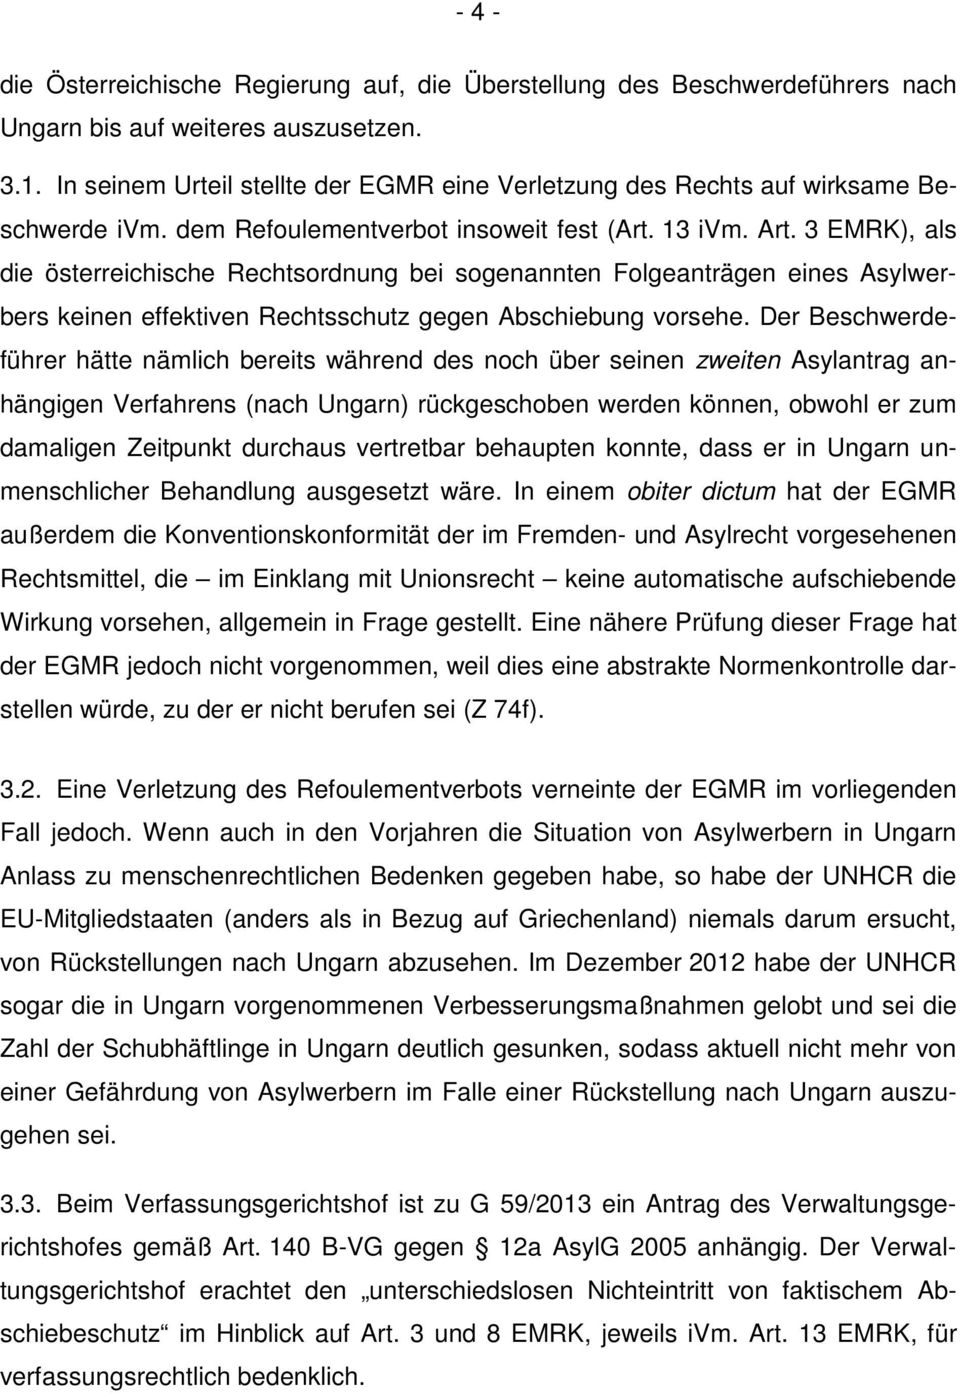 3 EMRK), als die österreichische Rechtsordnung bei sogenannten Folgeanträgen eines Asylwerbers keinen effektiven Rechtsschutz gegen Abschiebung vorsehe.